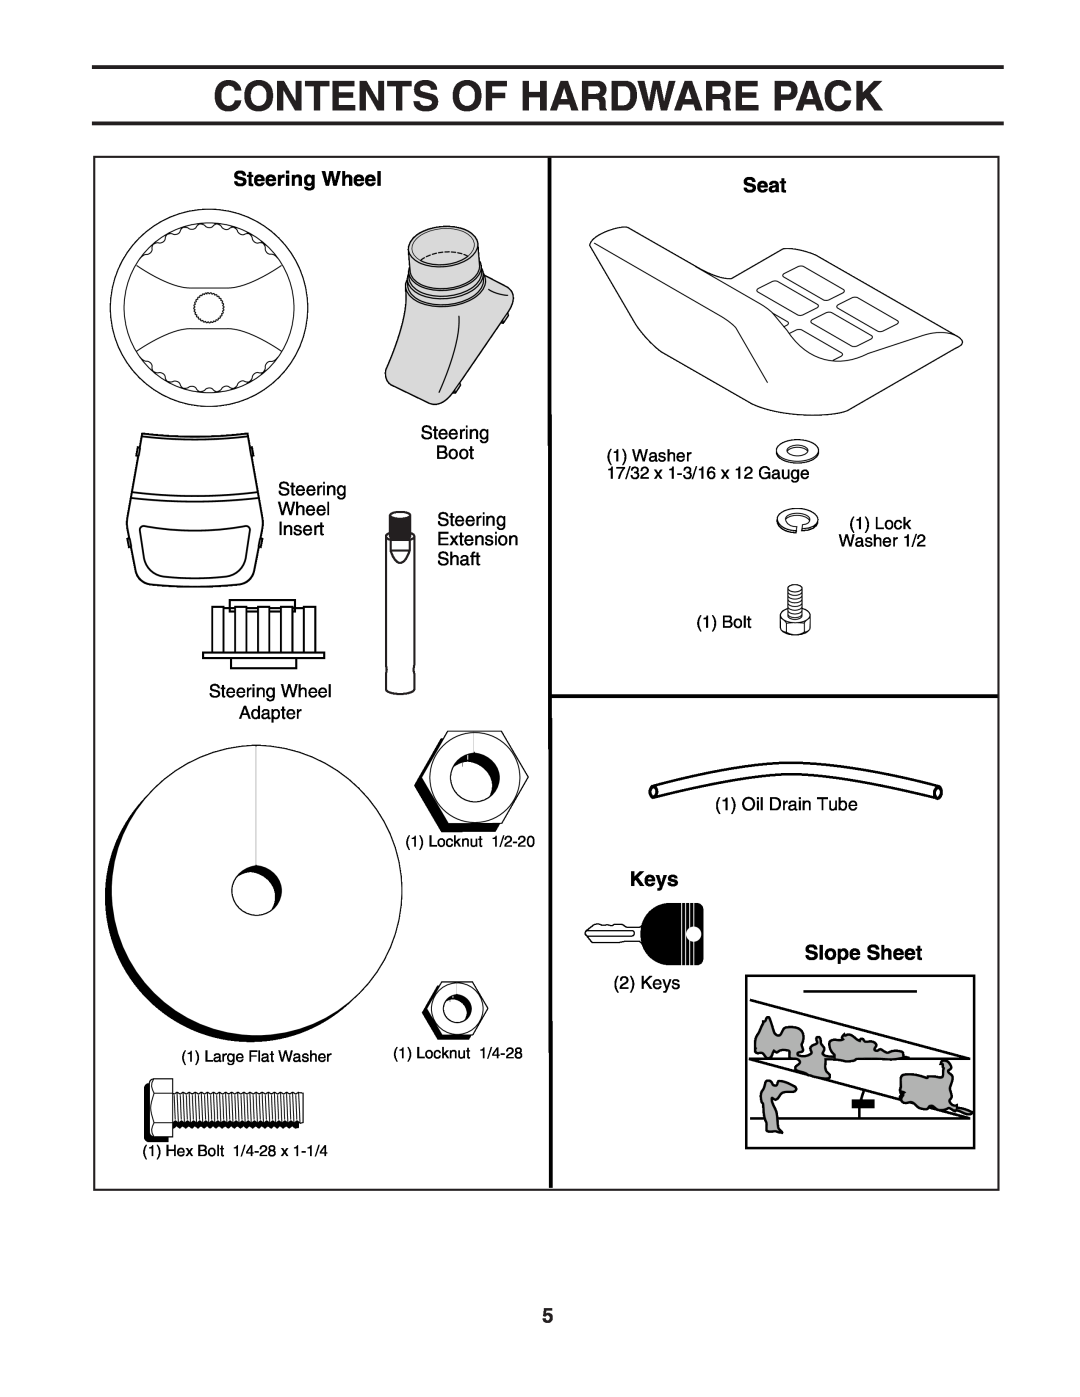 Poulan 188870 manual Contents Of Hardware Pack, Steering Wheel, Seat, Keys, Slope Sheet 